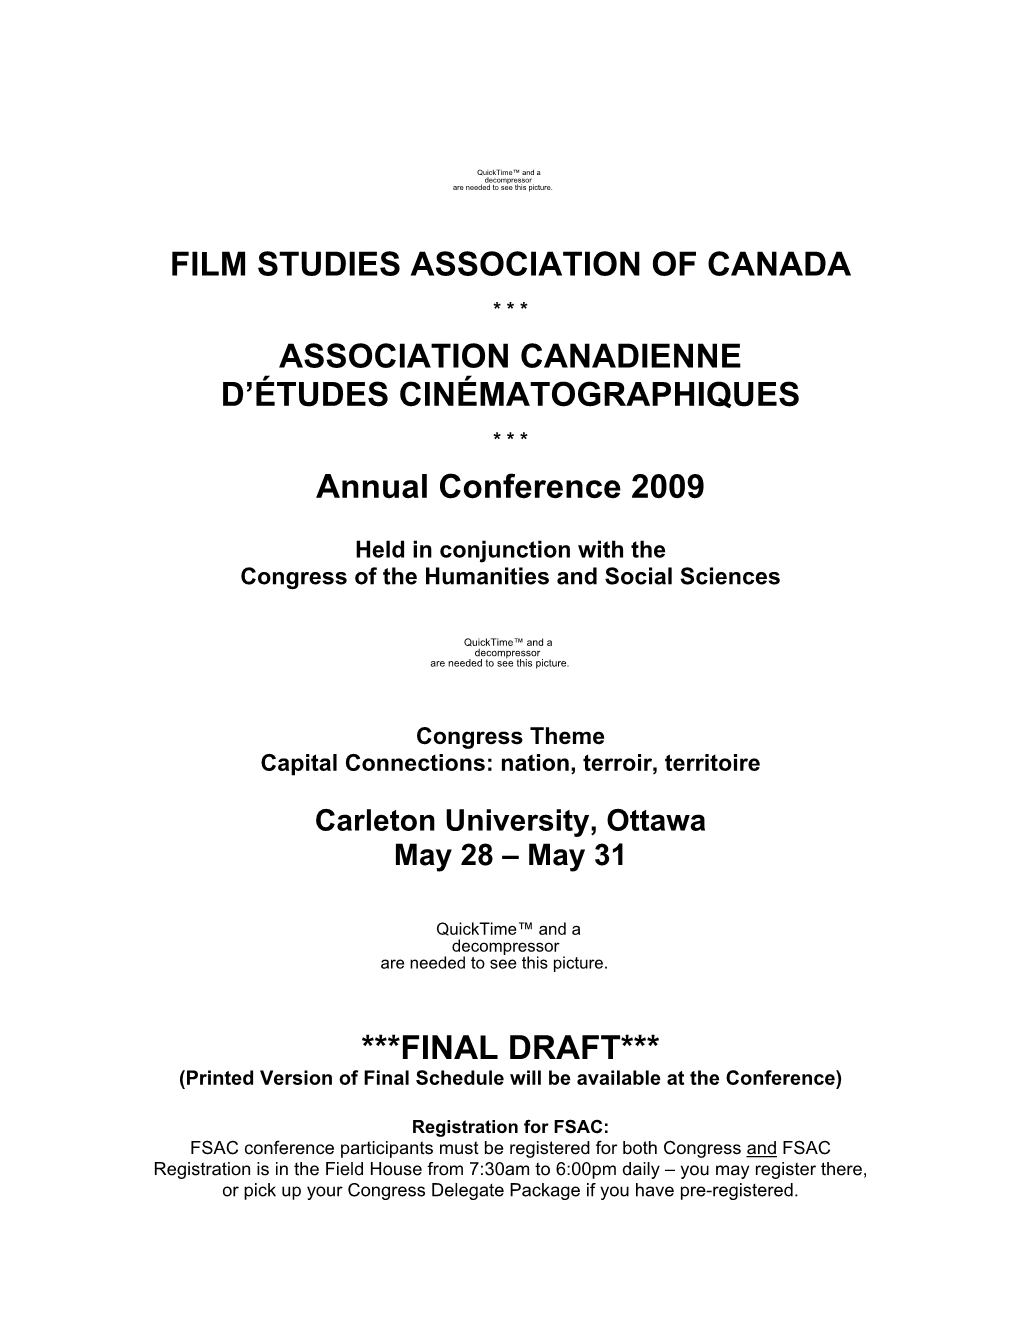 Carleton University, Ottawa May 28 – May 31